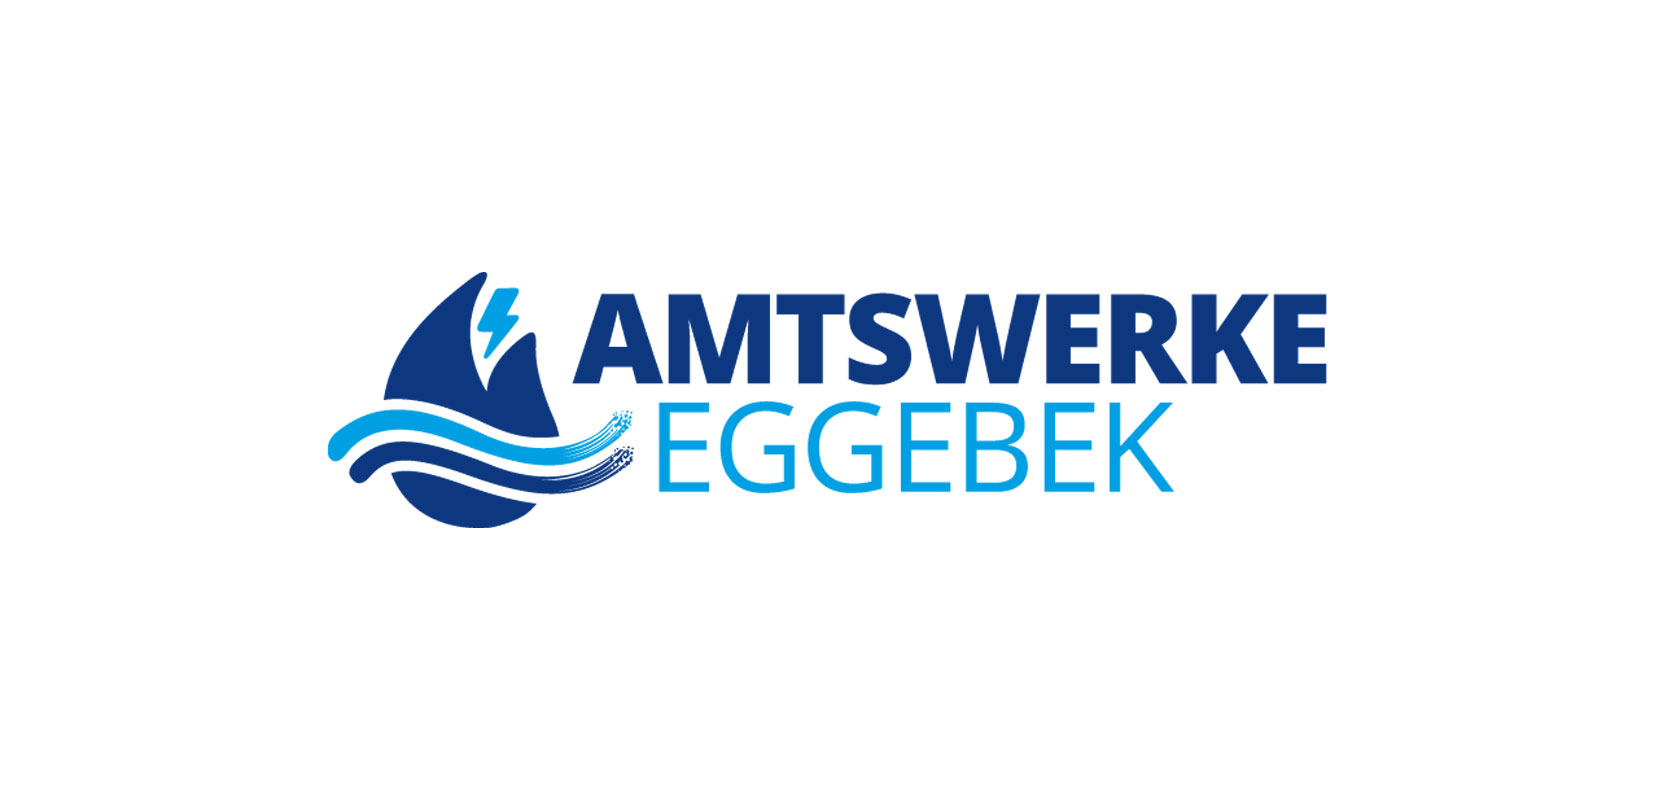 Amtswerke Eggebek